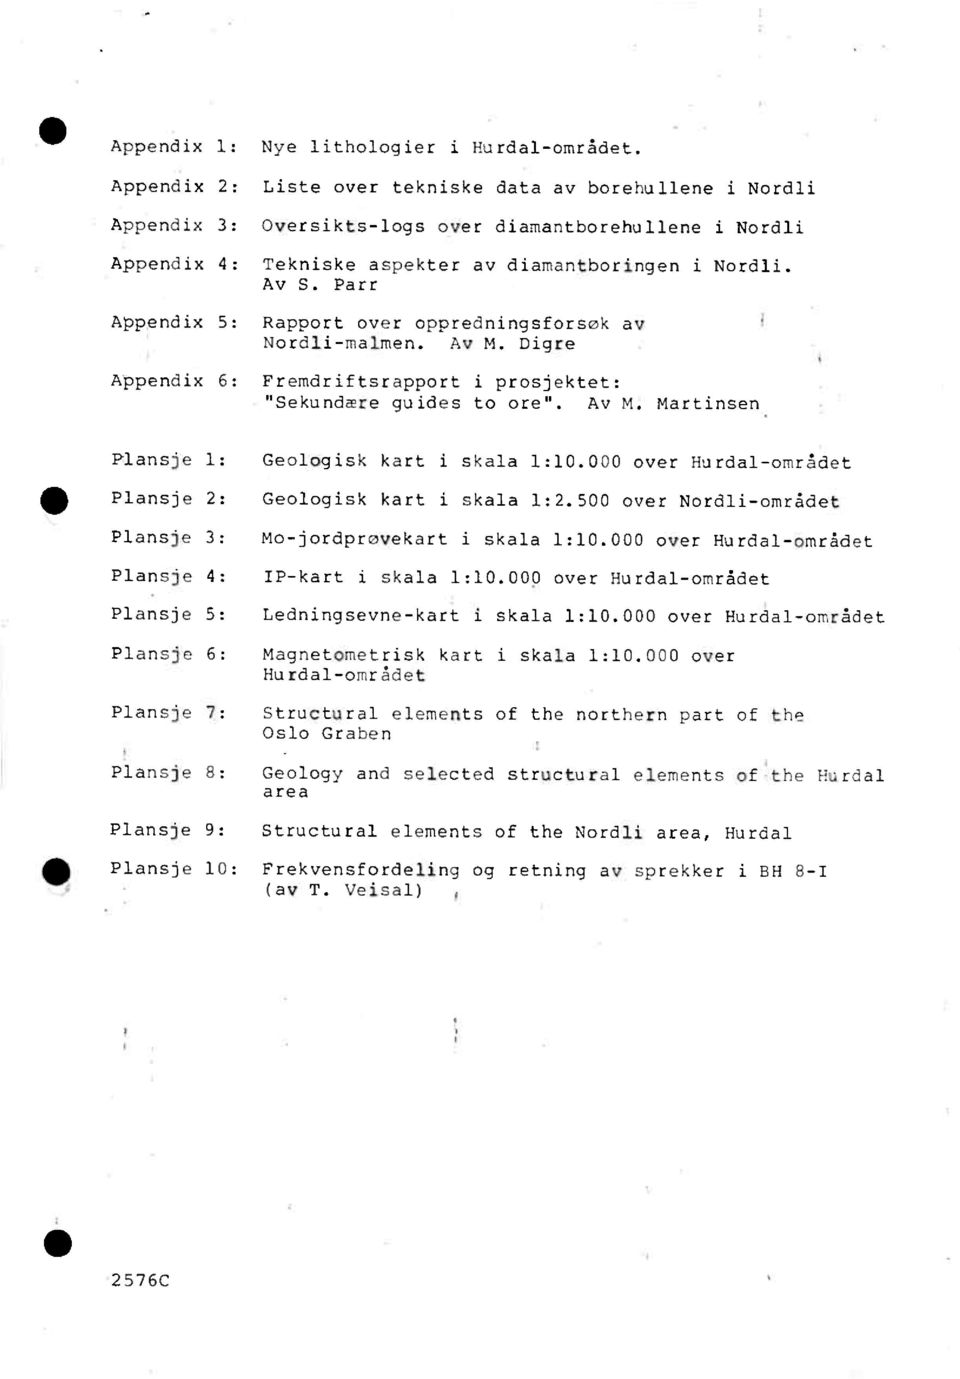 Parr Appendix 5: Rapport over oppredningsforsøk av Nordli-malmen. Av M. Digre Appendix 6: Fremdriftsraoport i prosjektet: "Sekundære guides to ore". Av M. Martinsen 111 Plansje 1: Geologisk kart i skala 1:.